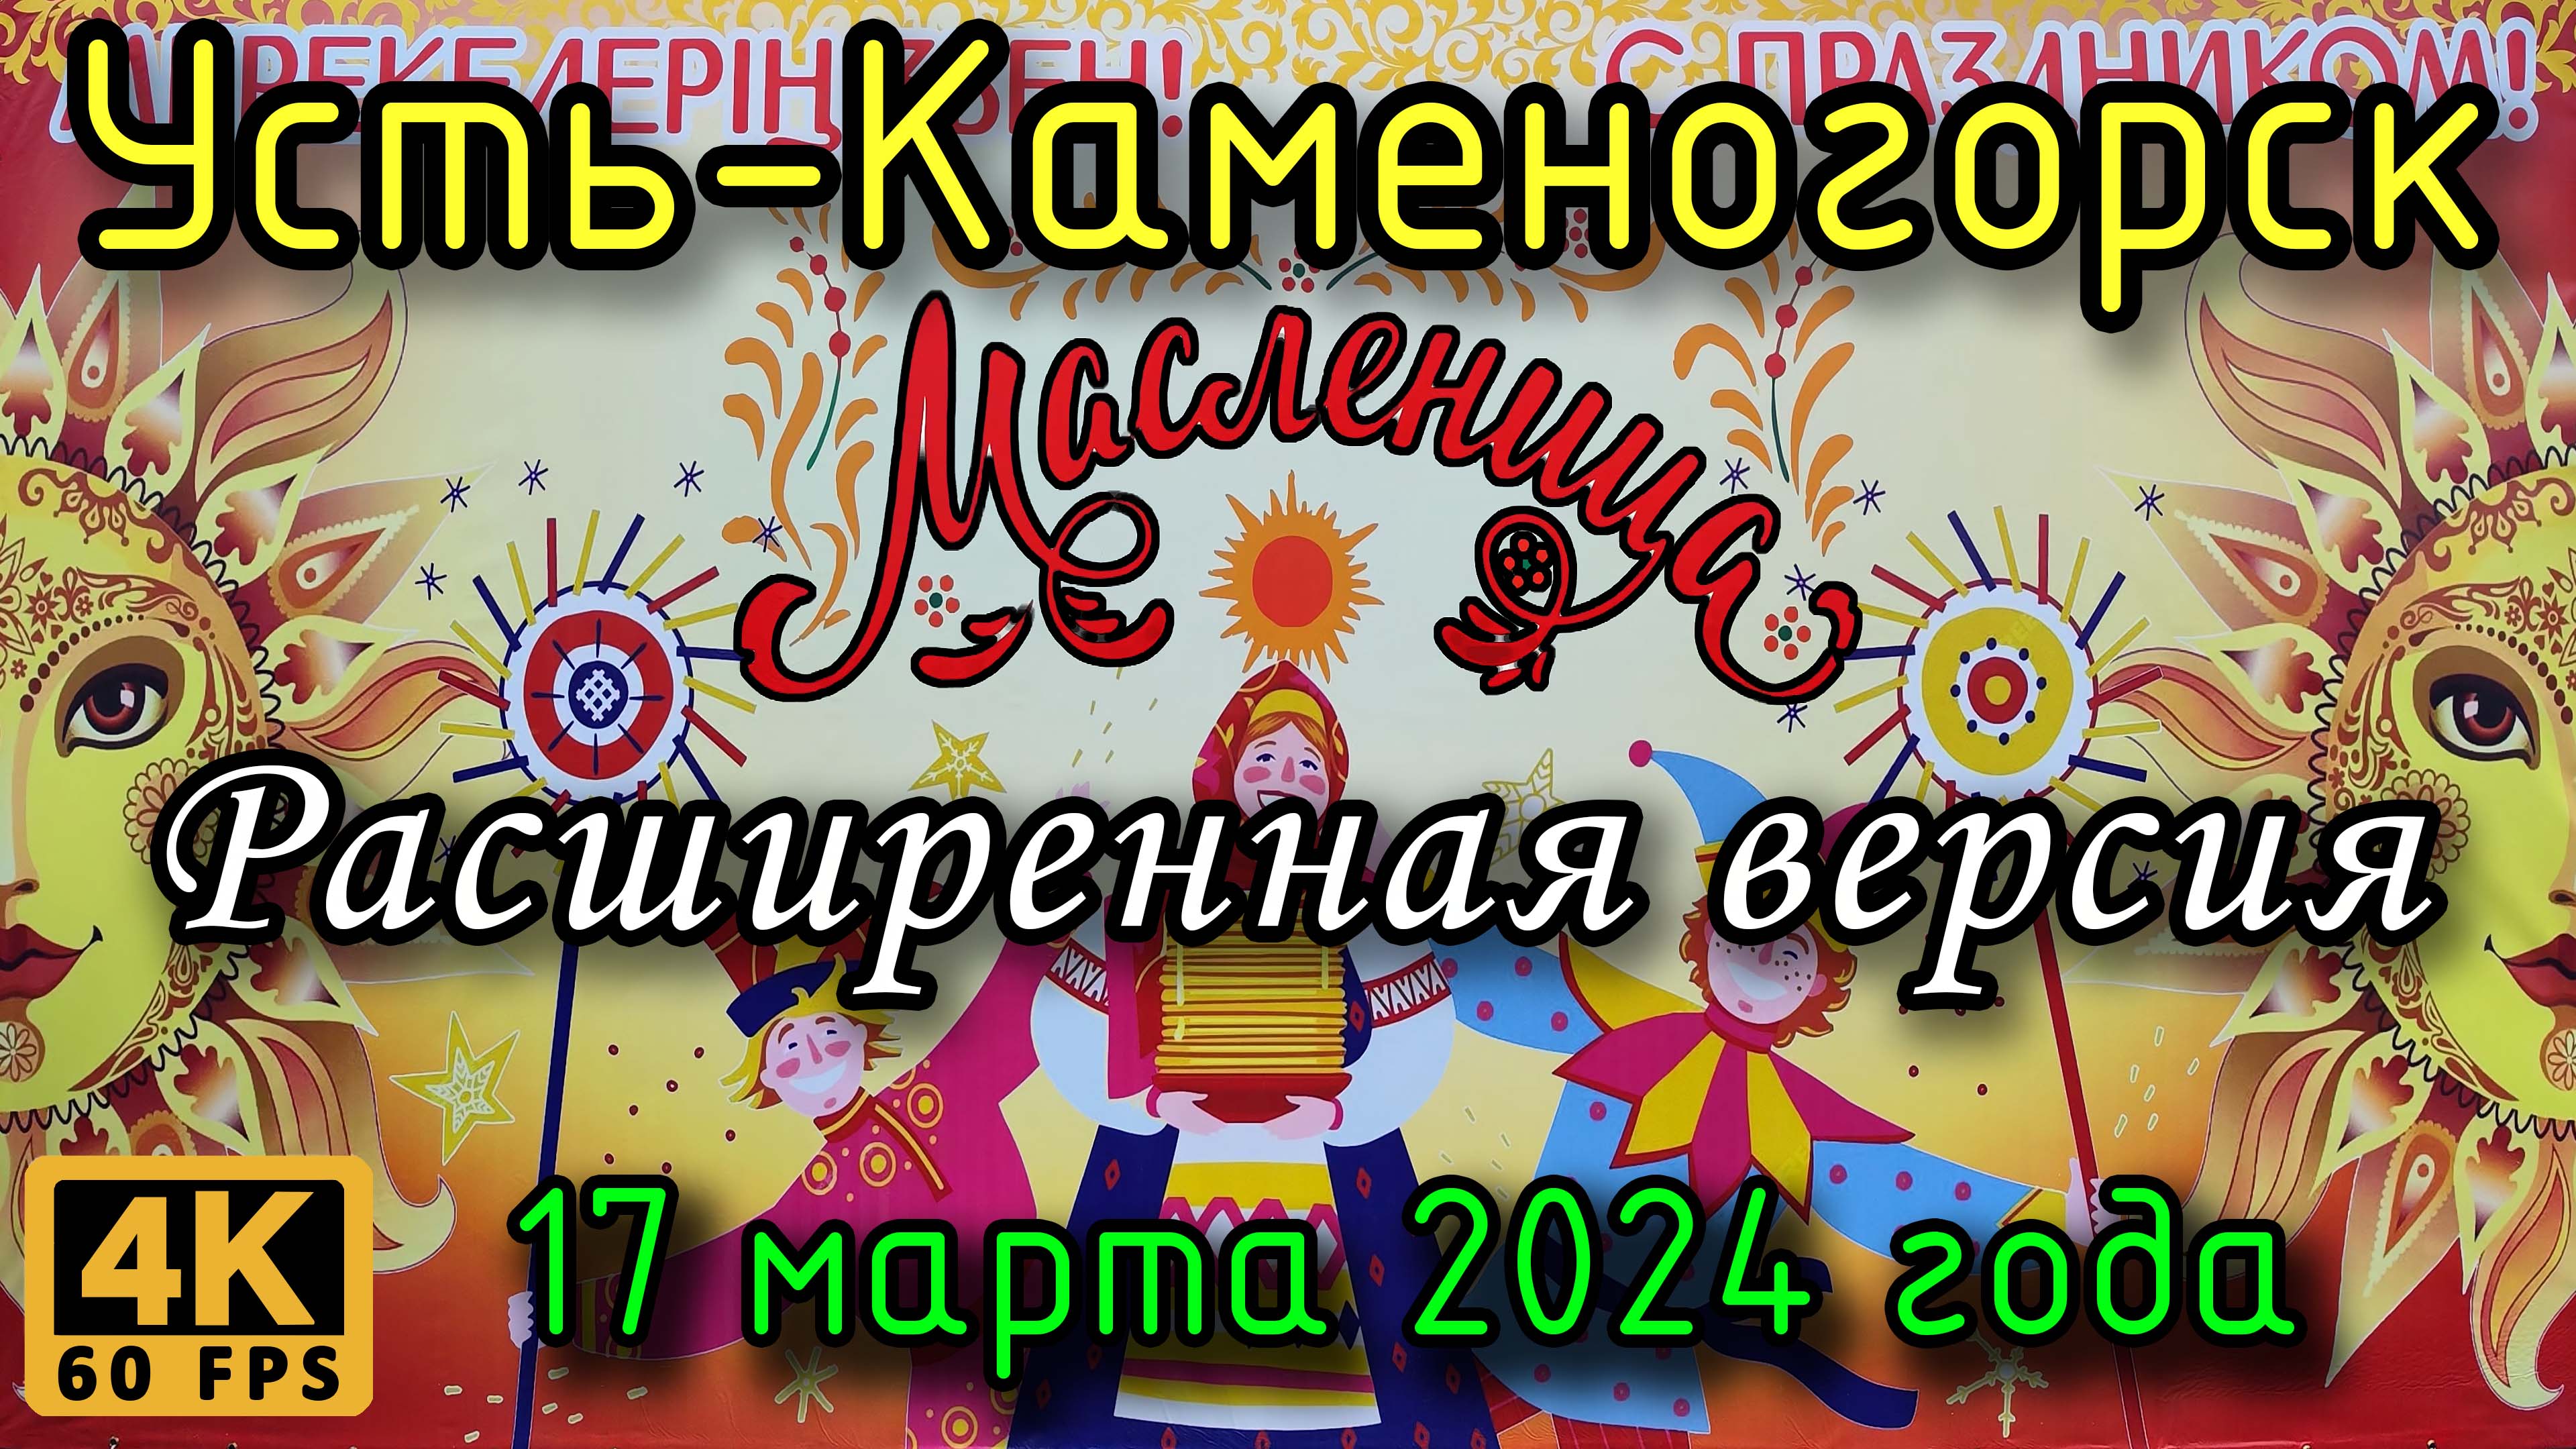 Усть-Каменогорск: Масленица у ДКМ (расширенная версия) в 4К, 17 марта 2024 года.